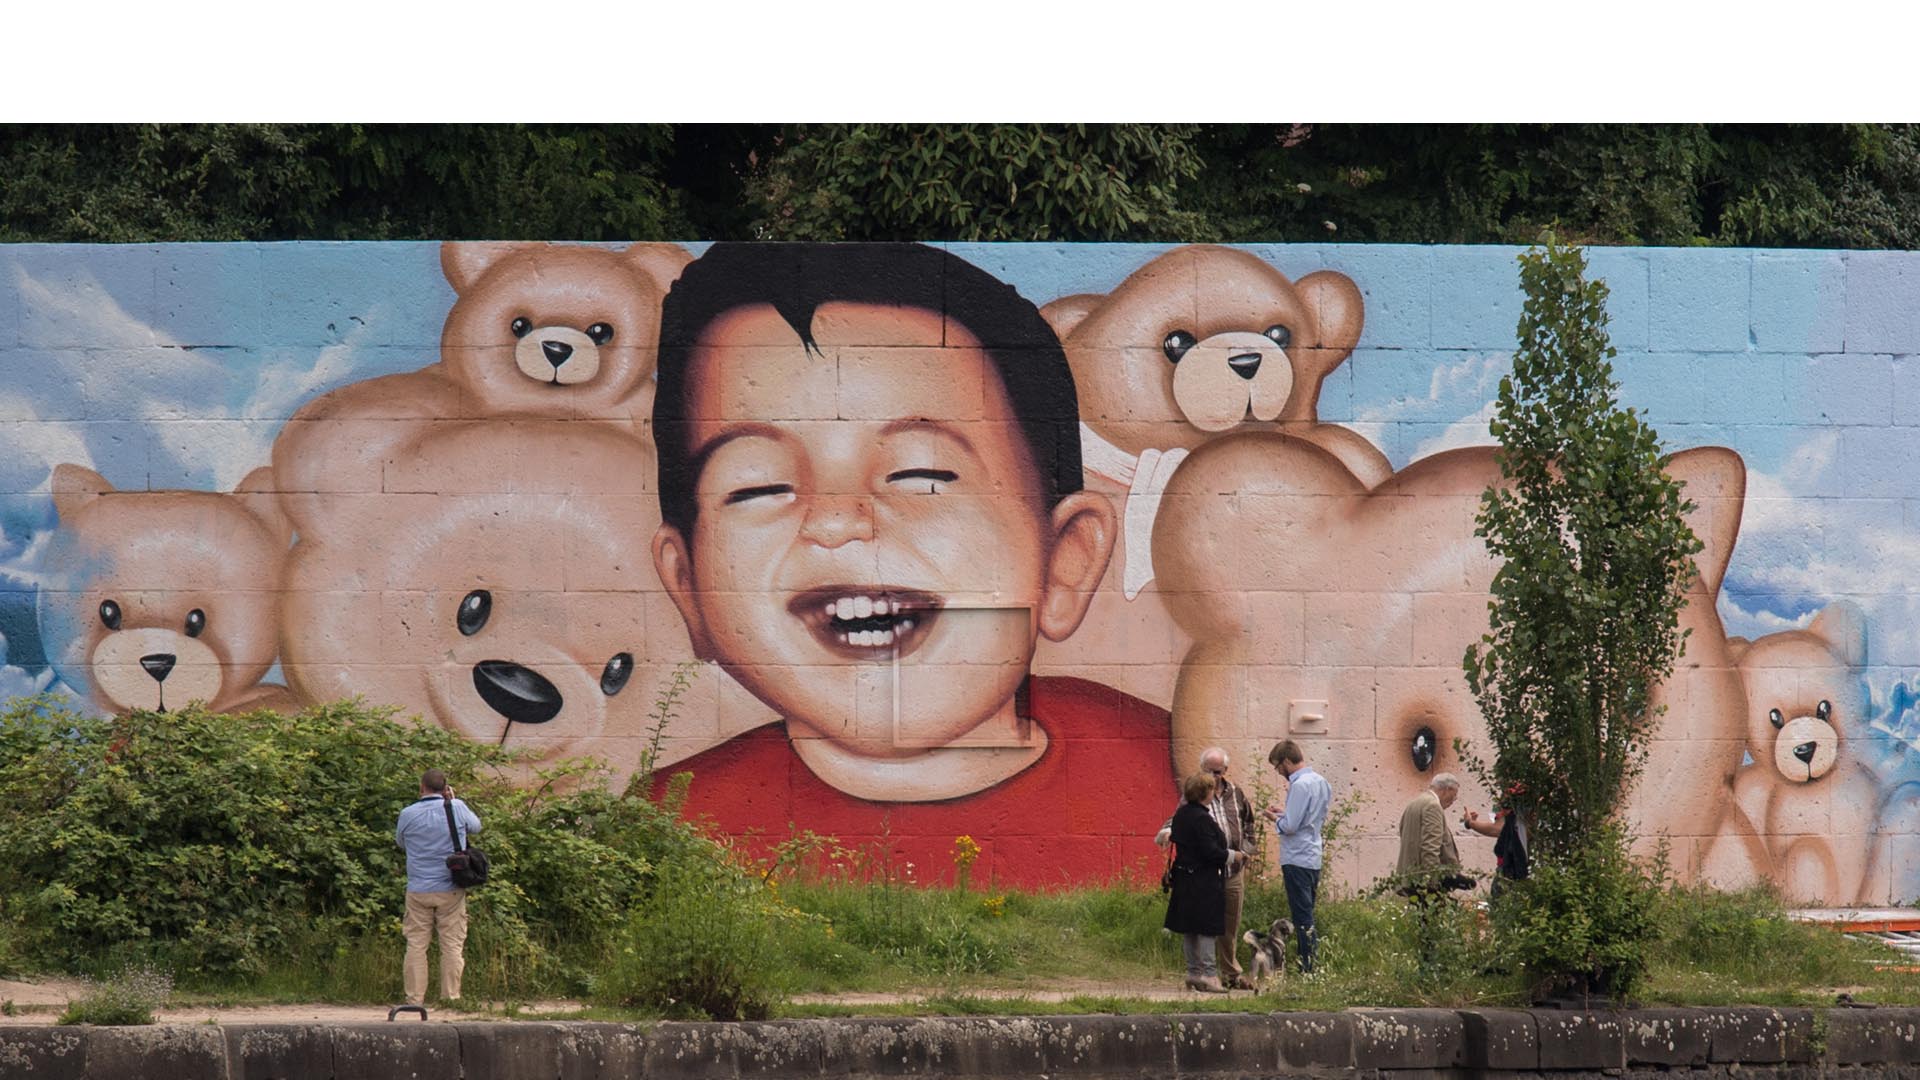 Los artistas Oguz Sen y Justus Becker, pintaron un mural en honor al niño sirio que murió durante la crisis migratoria